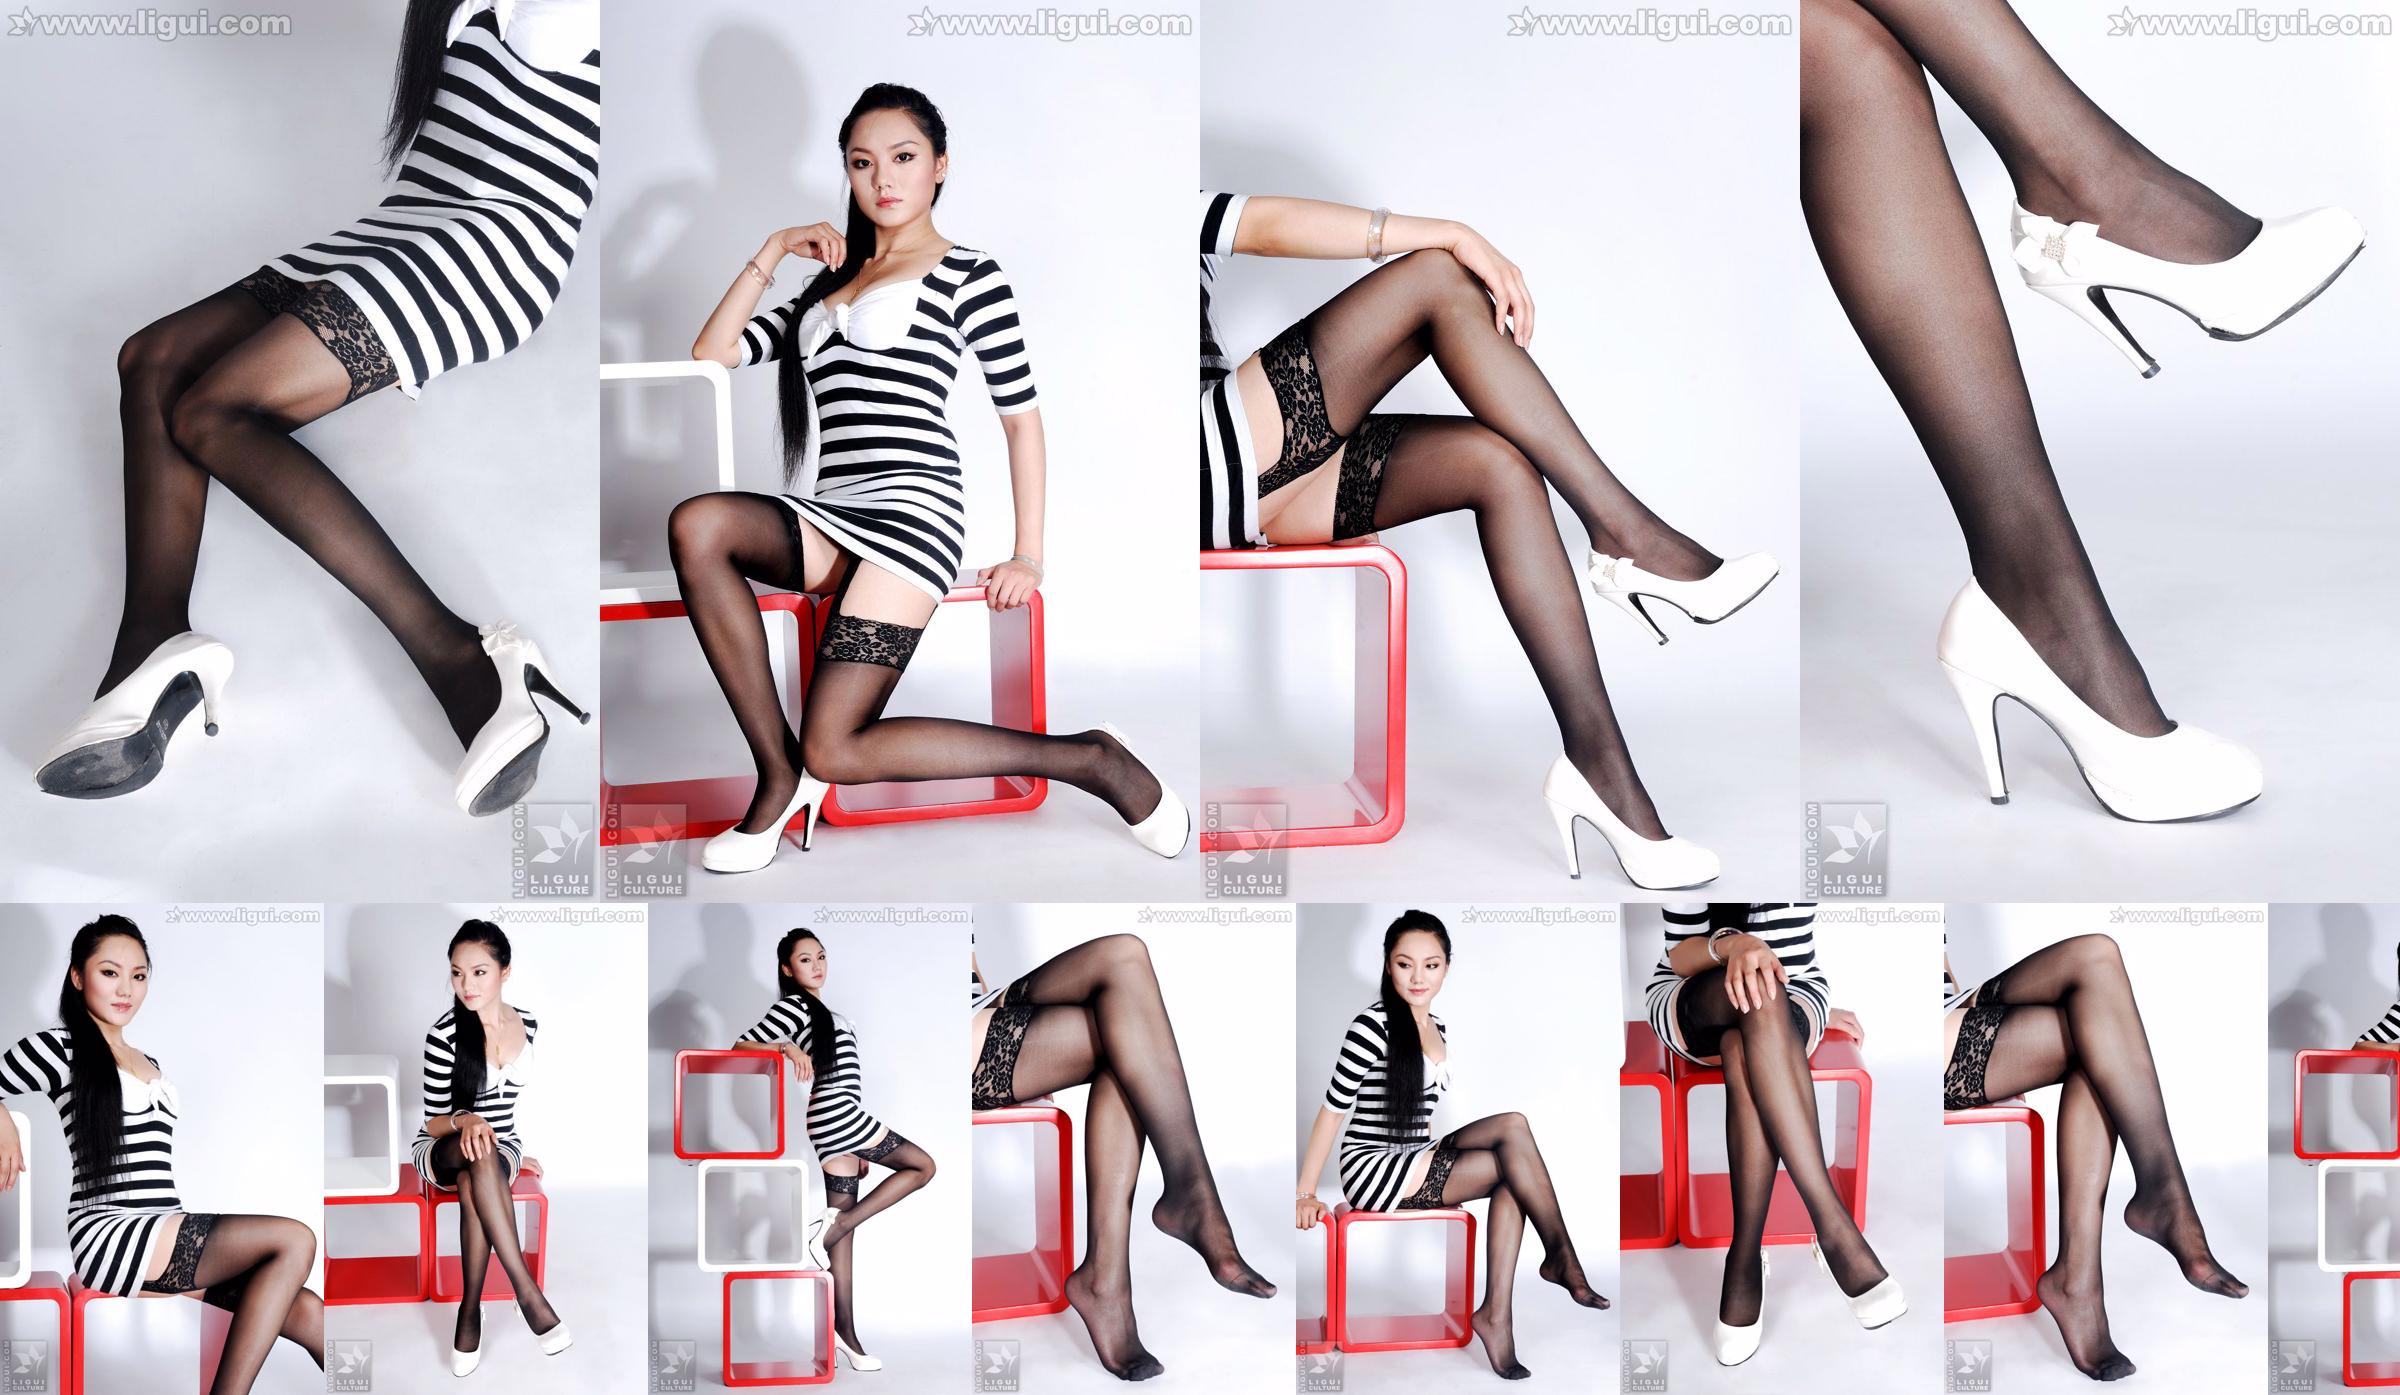 Model Yang Zi "간단한 가정 장식 스타킹의 매력"[丽 柜 LiGui] 아름다운 다리와 옥 발 사진 No.a9d2a4 페이지 1